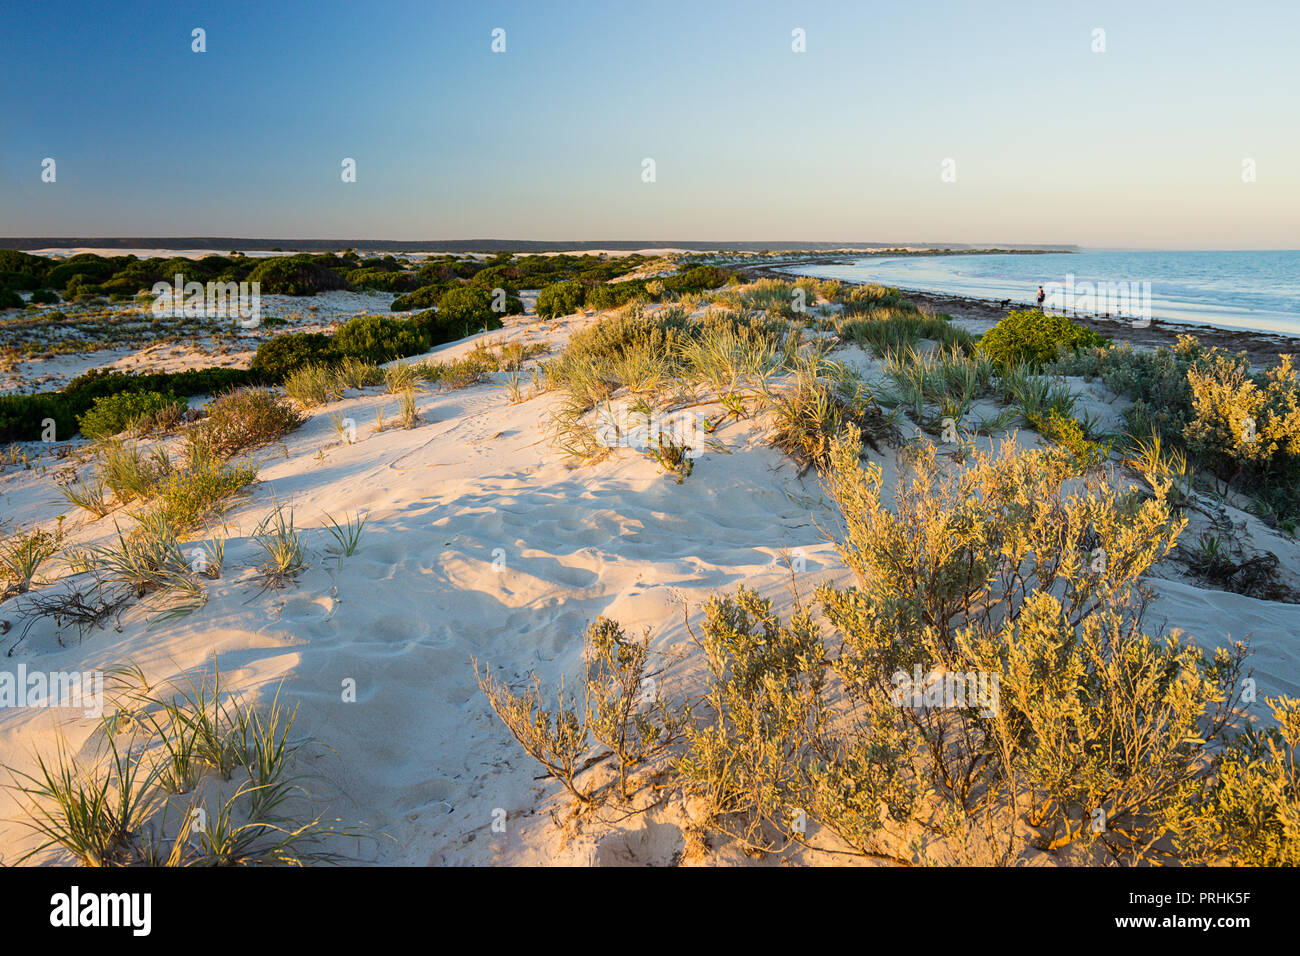 Plage de sable blanc sur la côte de l'océan au sud de l'Australie Occidentale Eucla Banque D'Images